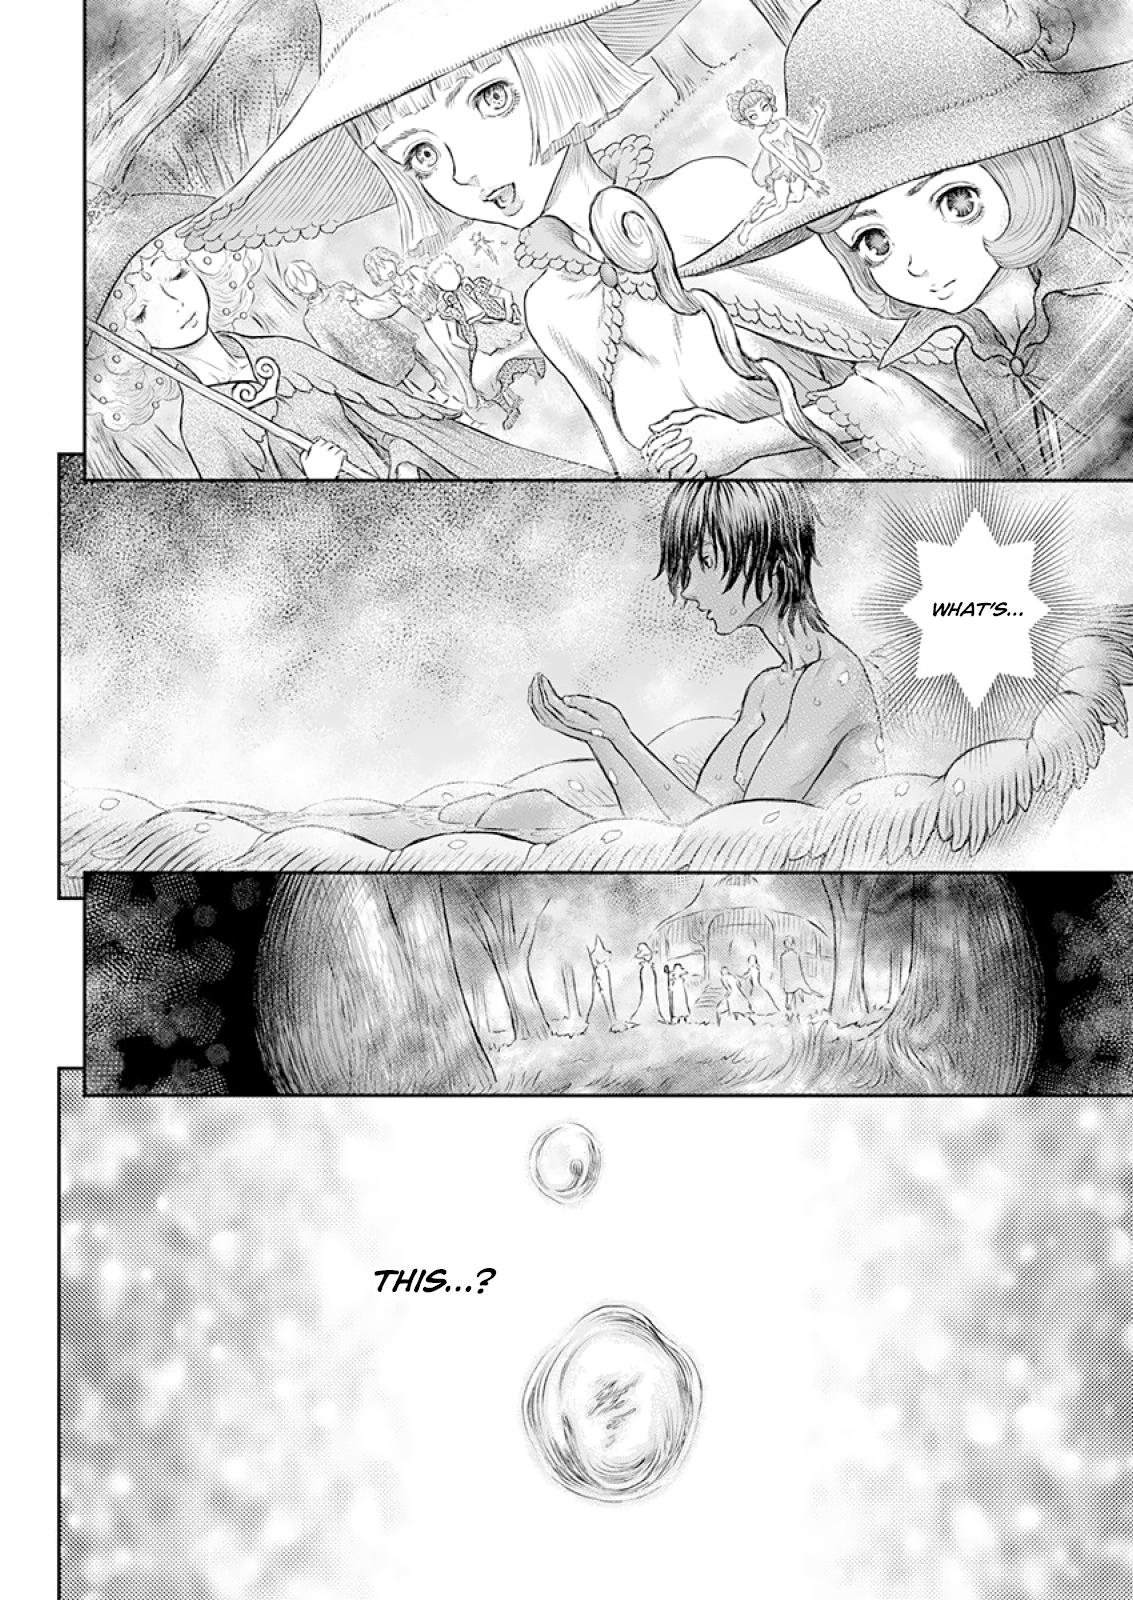 Berserk Manga Chapter 372 image 13